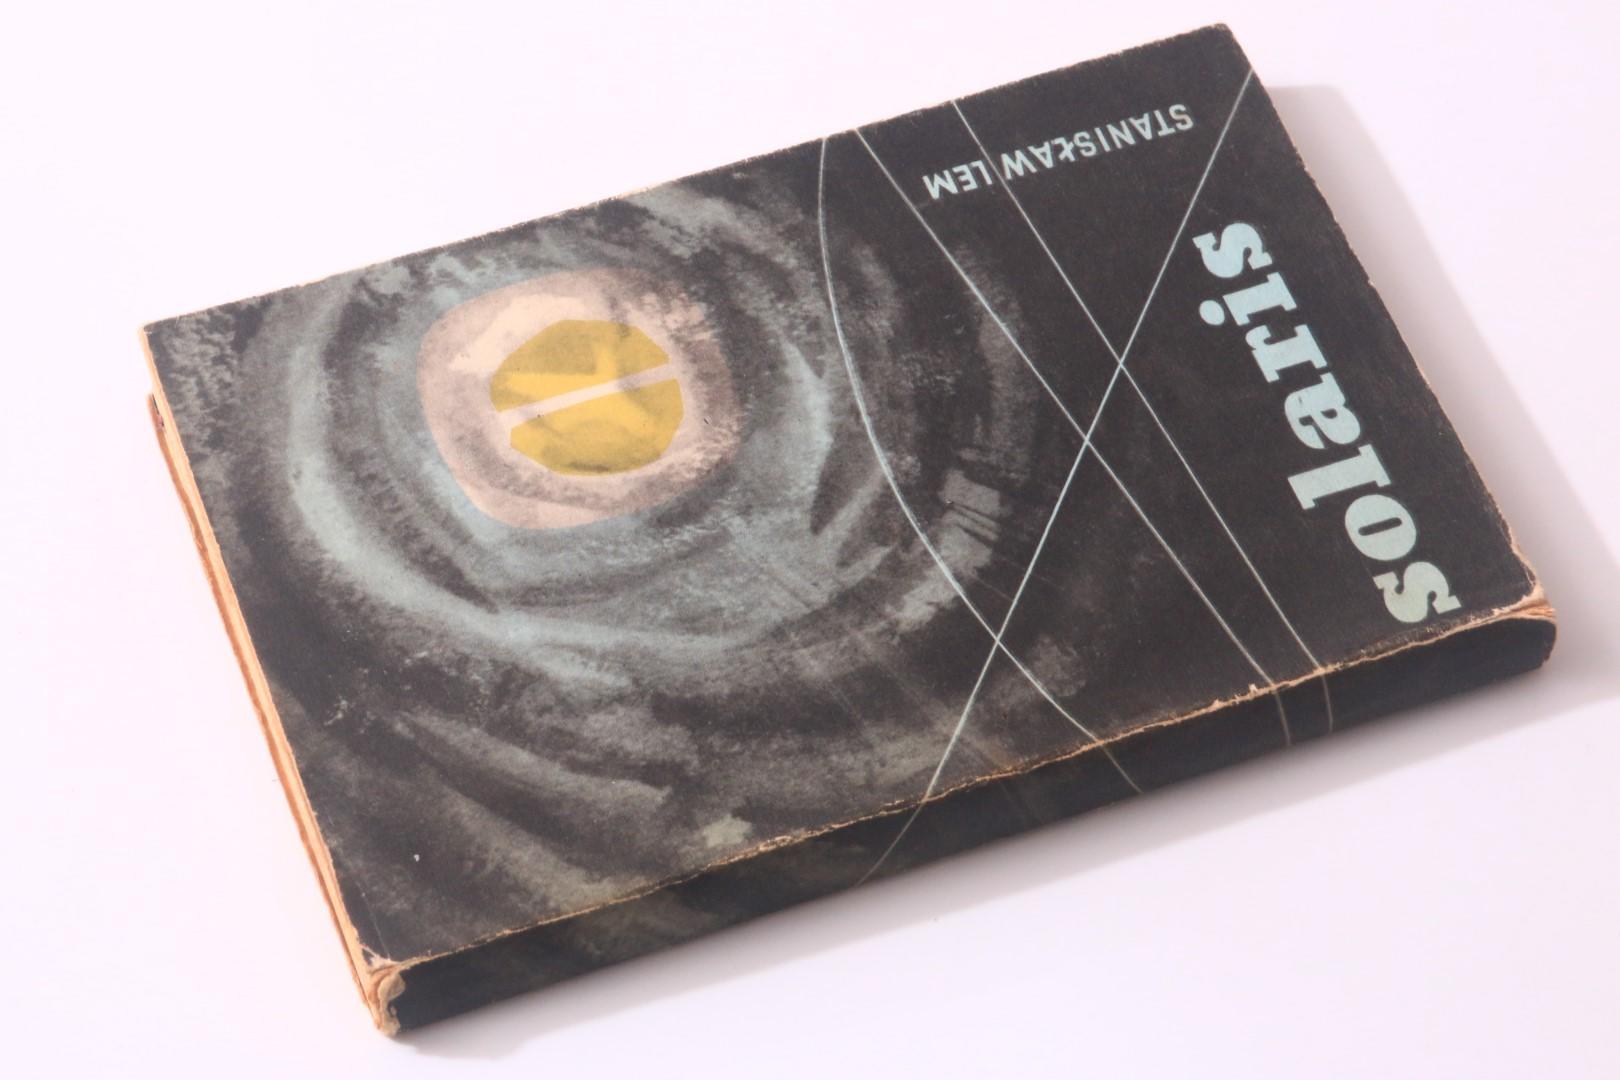 Stanislaw Lem - Solaris - Wydanwnictwo Ministerstwa Obrony Narodowej, 1961, First Edition.